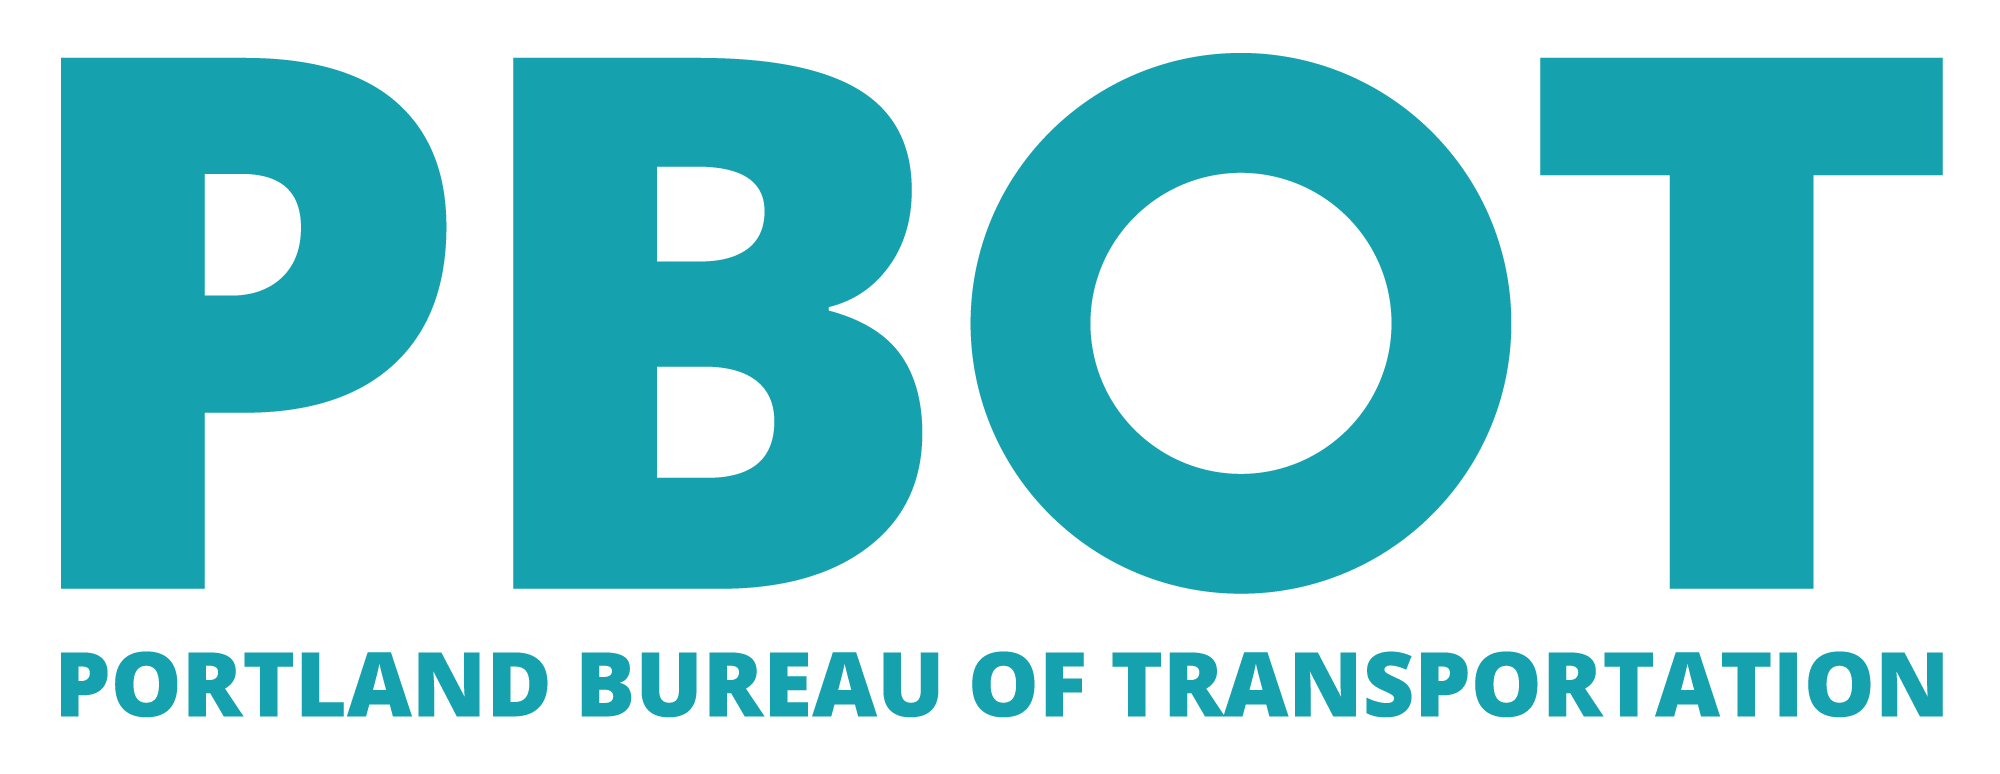 PBOT-logo-blue